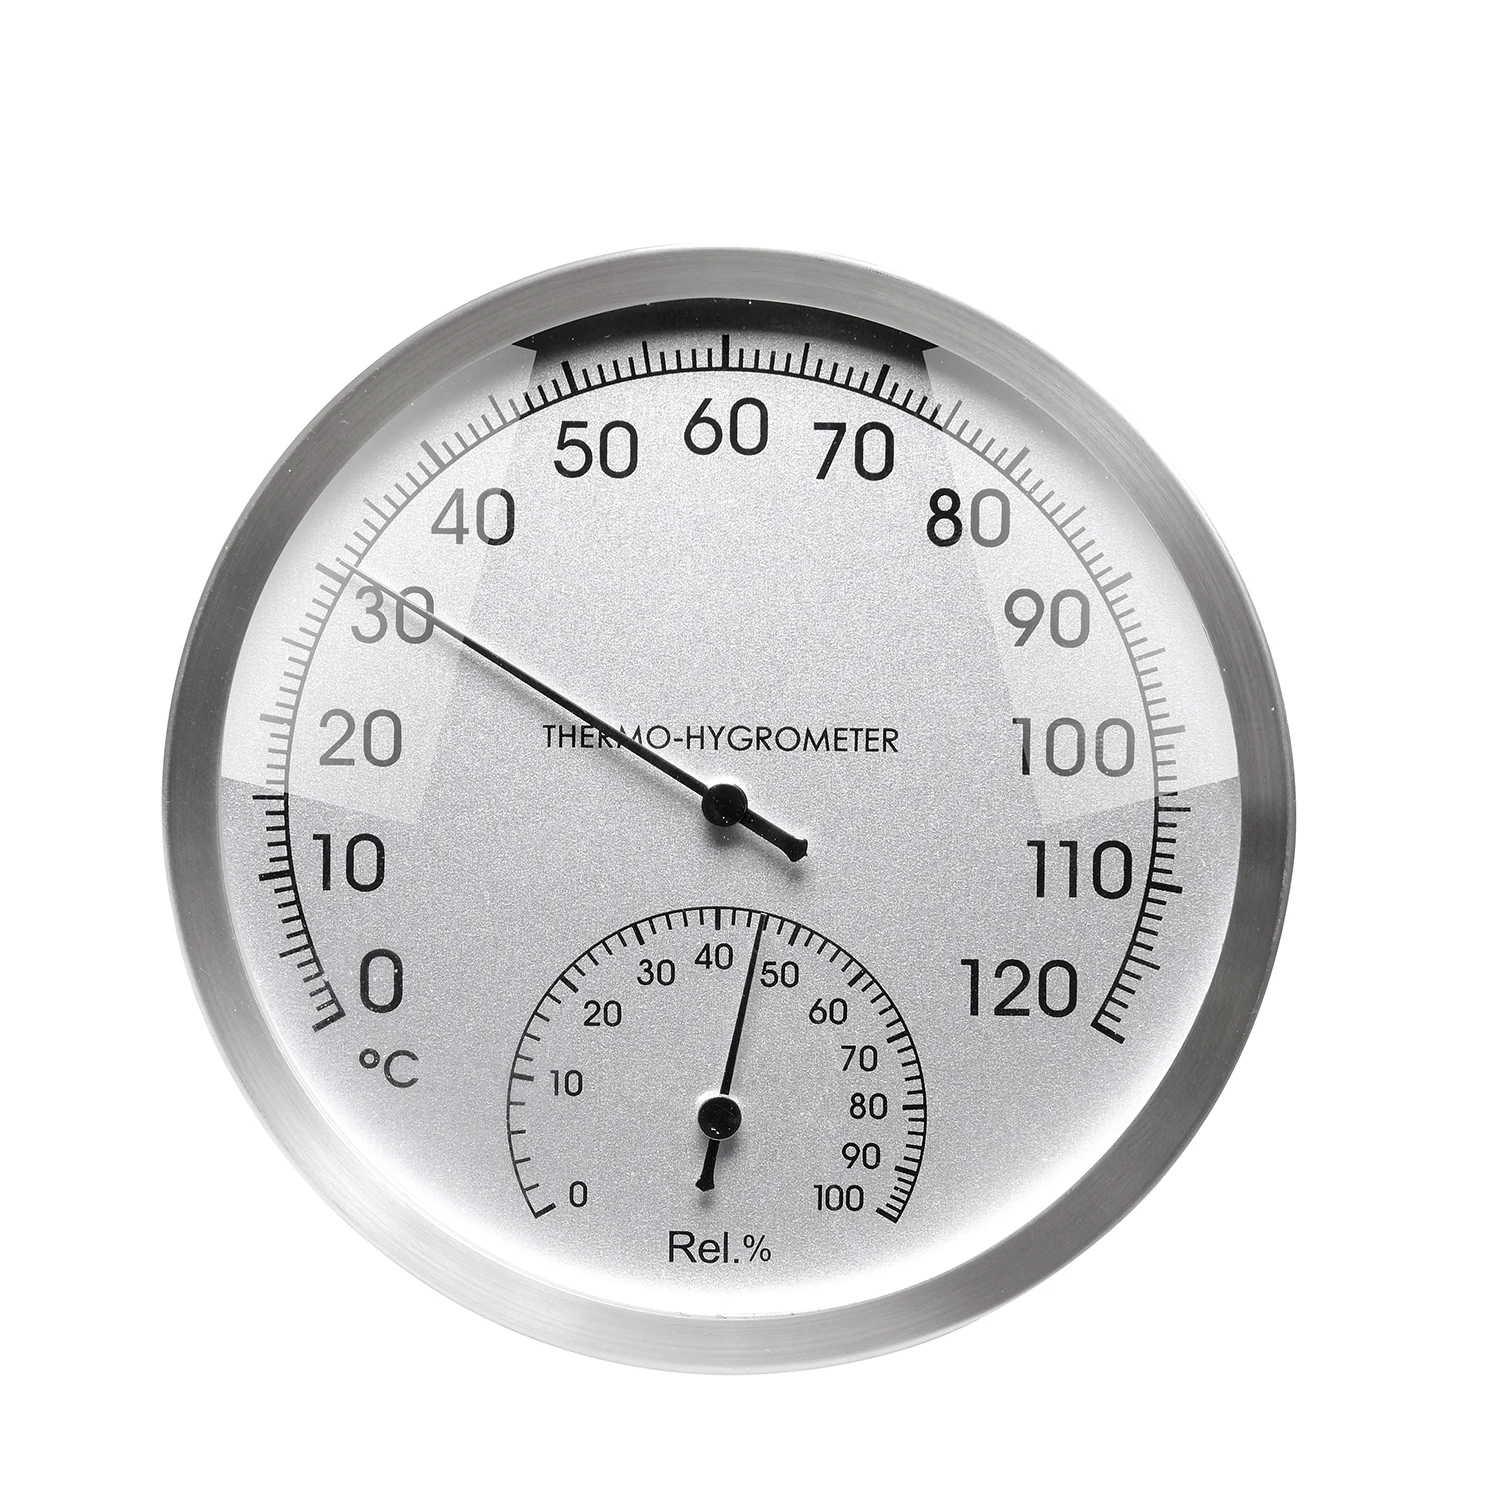 " термометр гигрометр настенный датчик влажности индикатор аналоговый температура влажность монитор для сауны датчик влажности